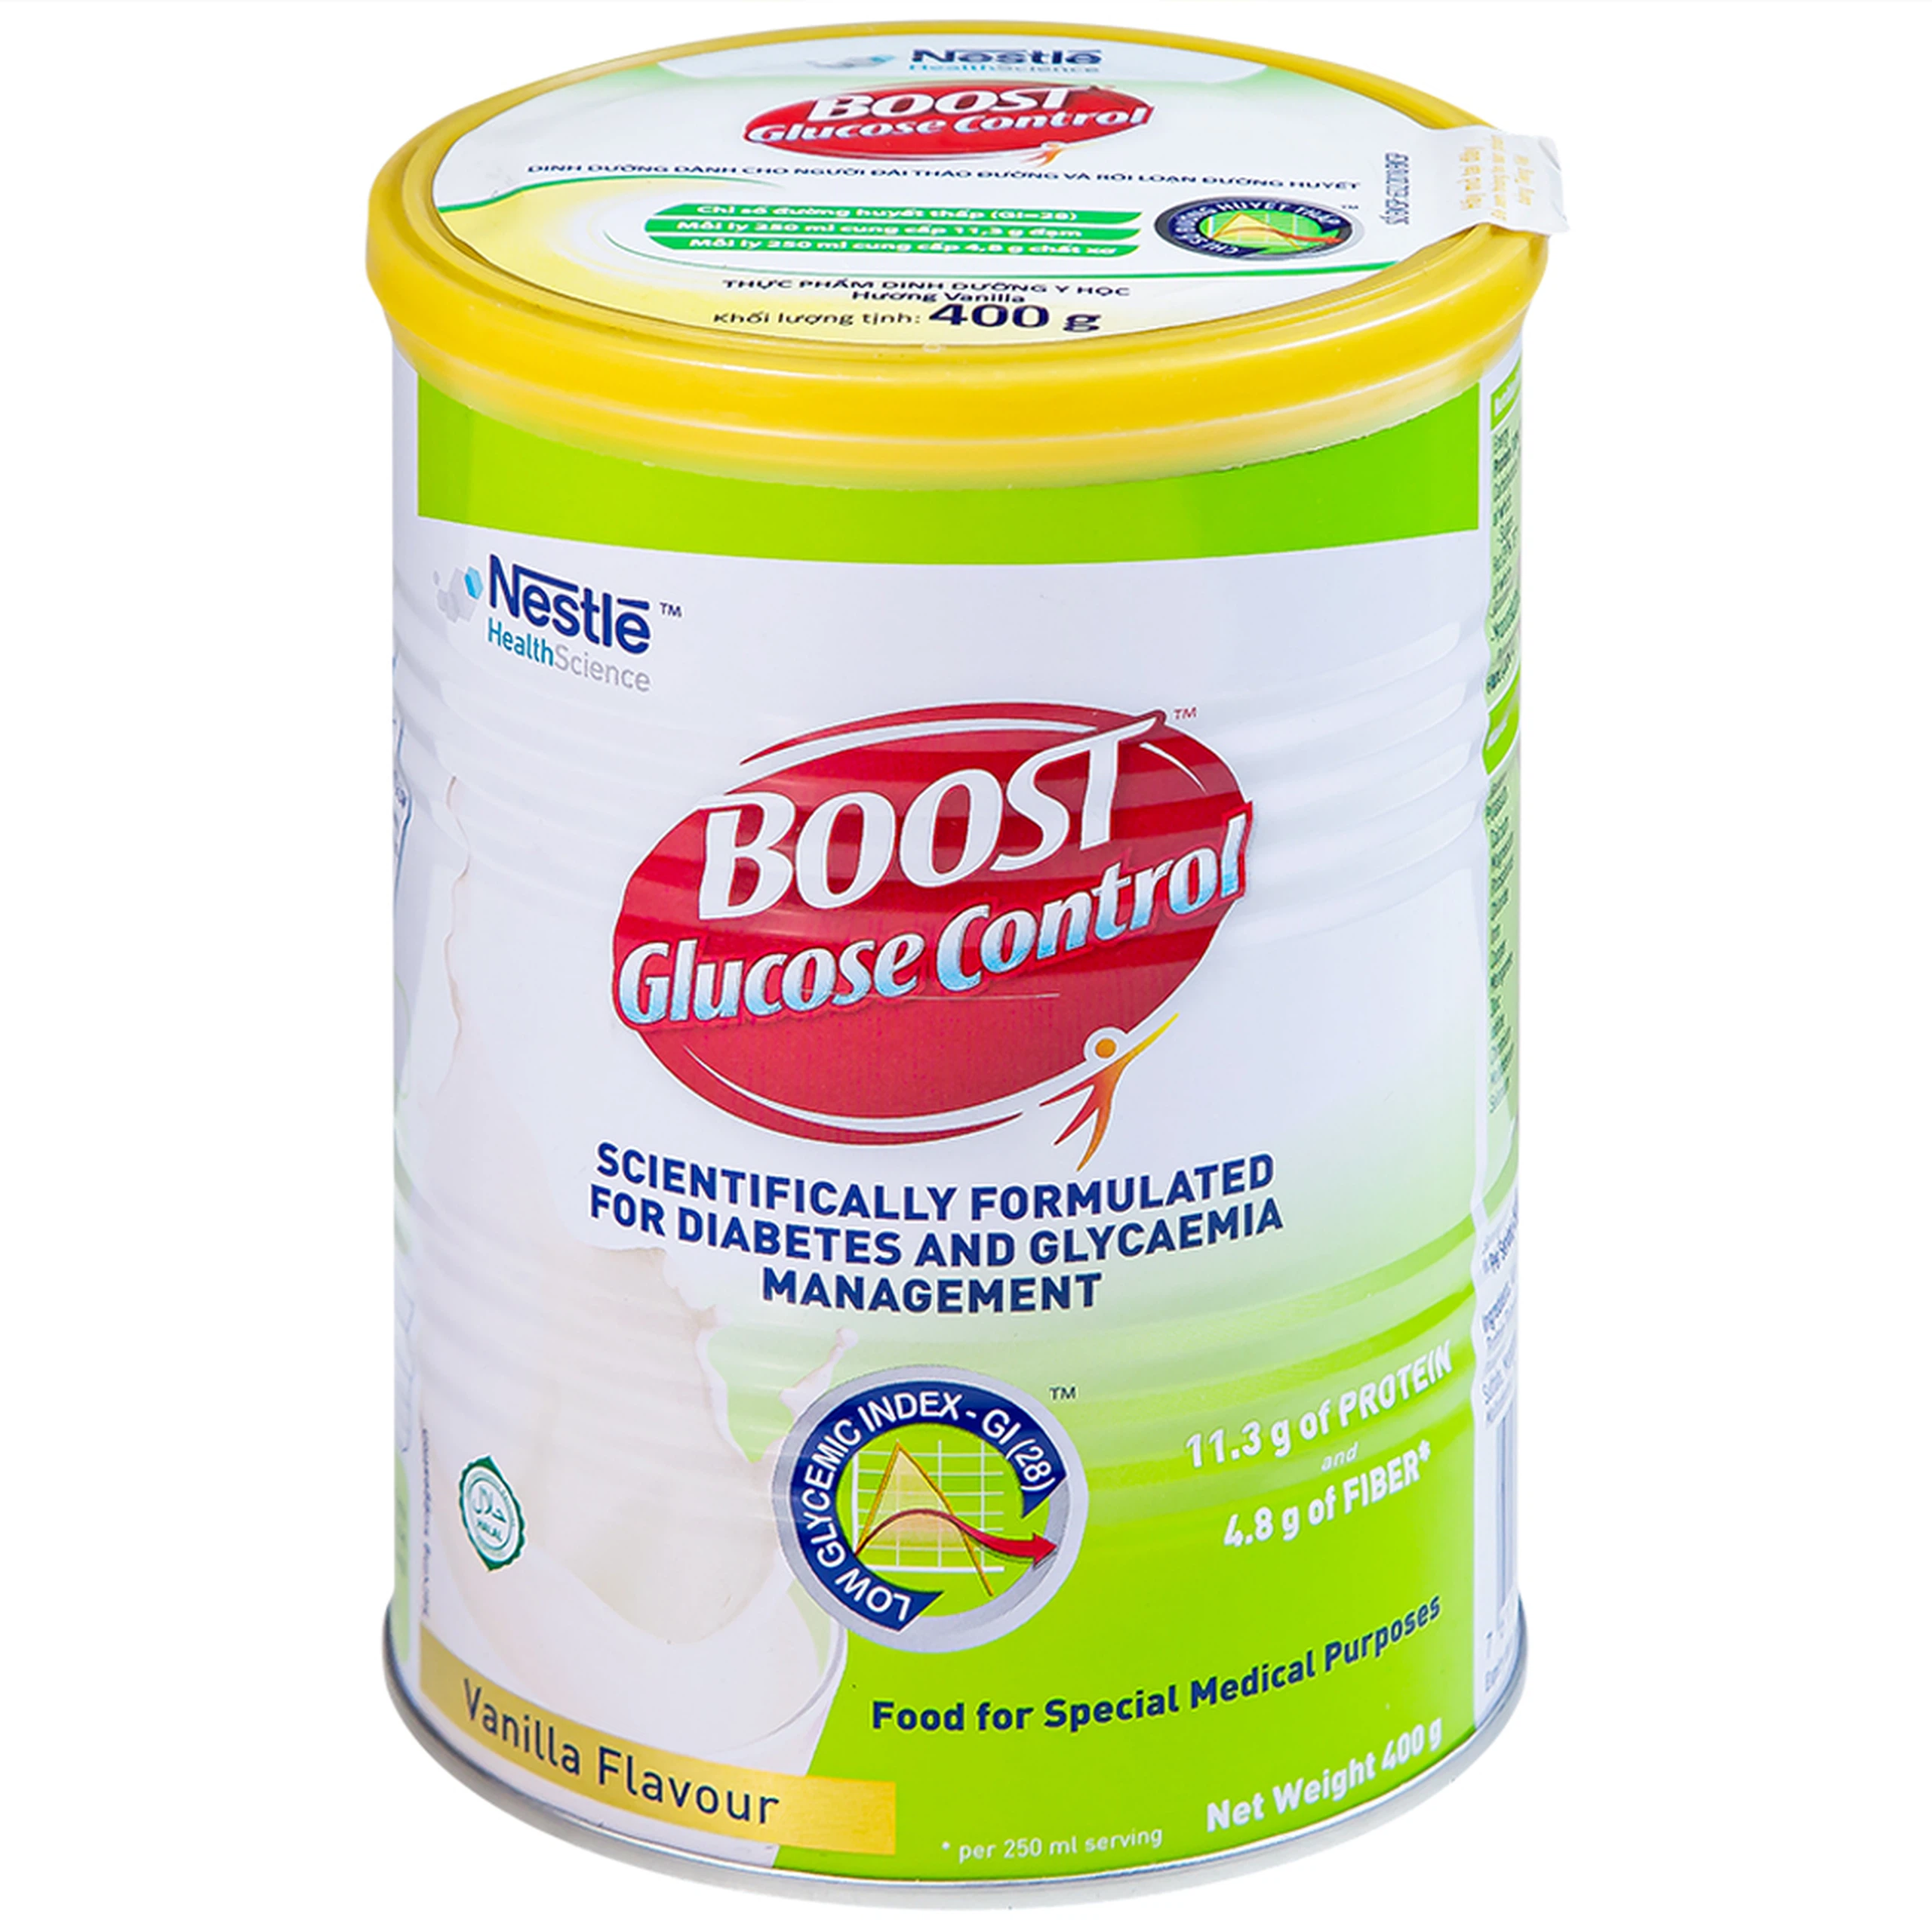 Sữa Boost Glucose Control Nestlé bổ sung dinh dưỡng cho người tiểu đường (400g)